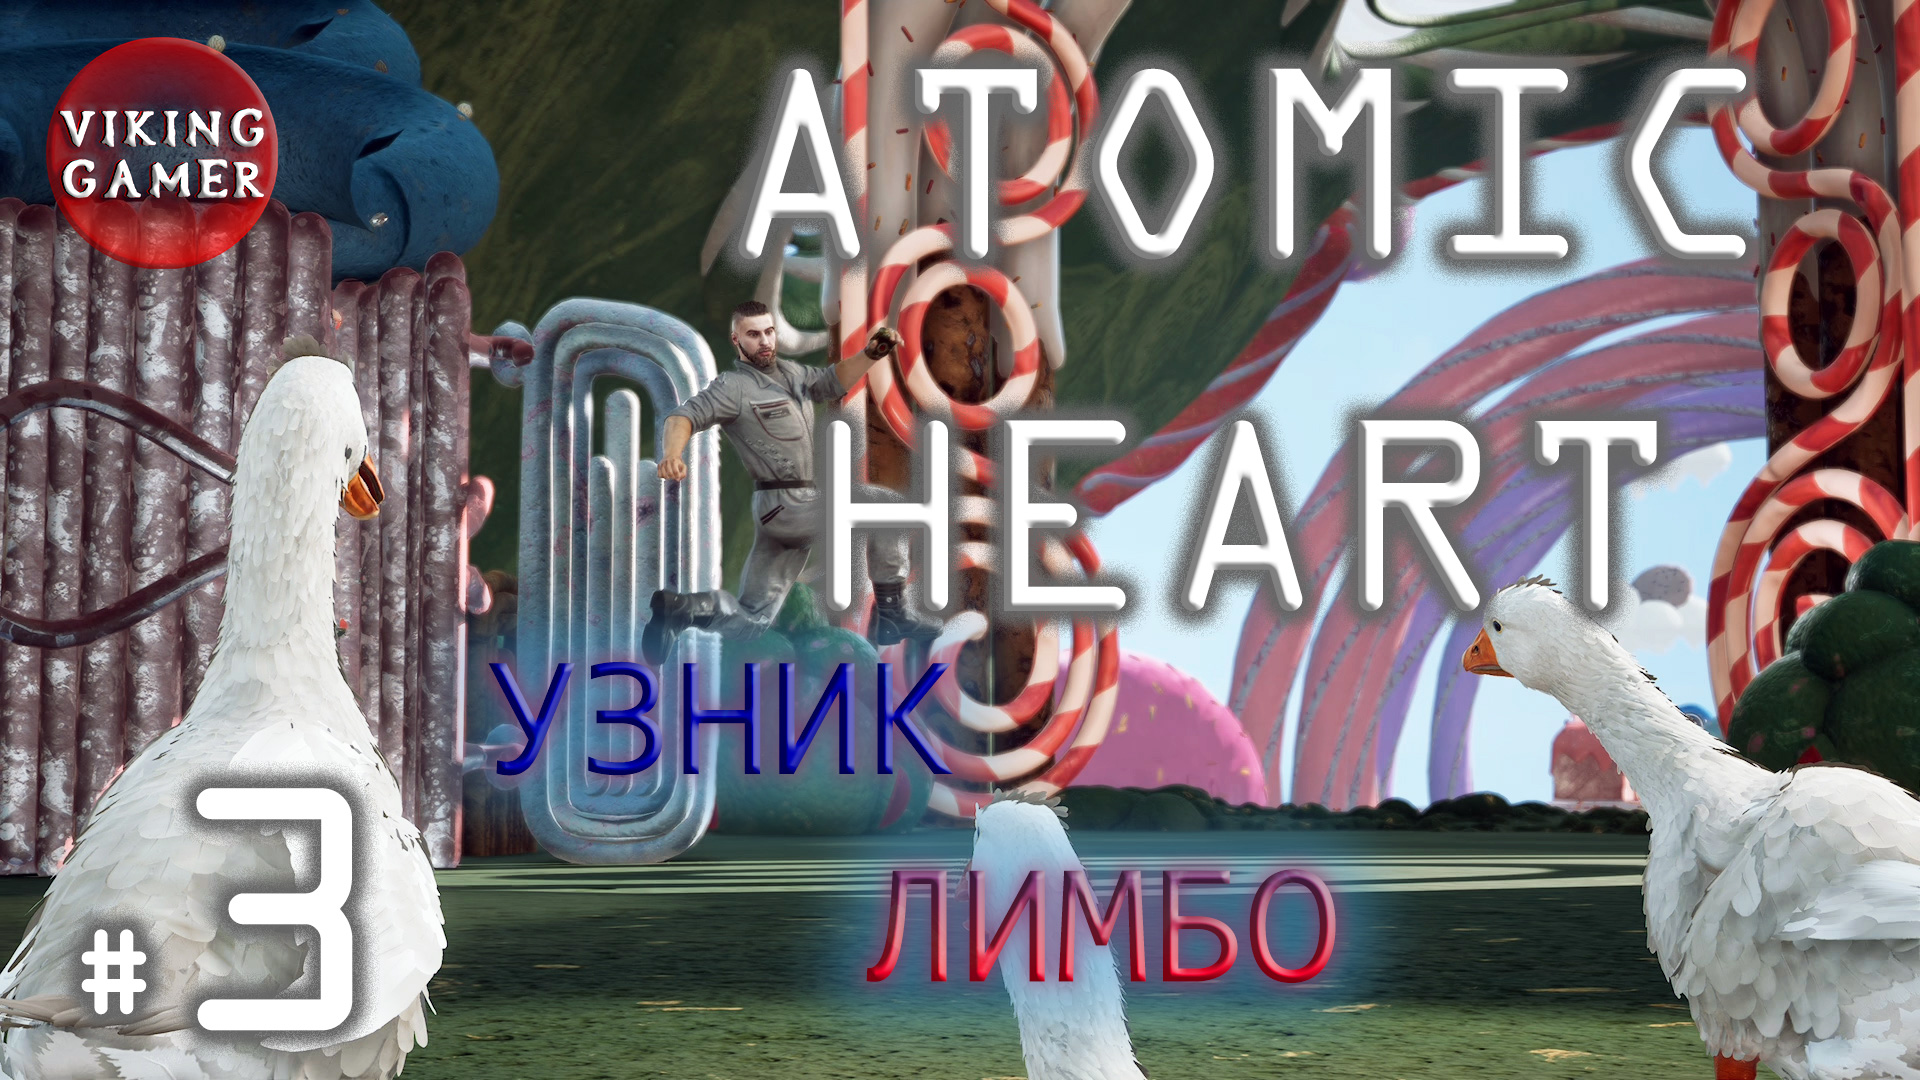 Узник Лимбо   "Atomic Heart "  прохождение # 3.  DLC 2  Атомное сердце.  Гонки с гусем